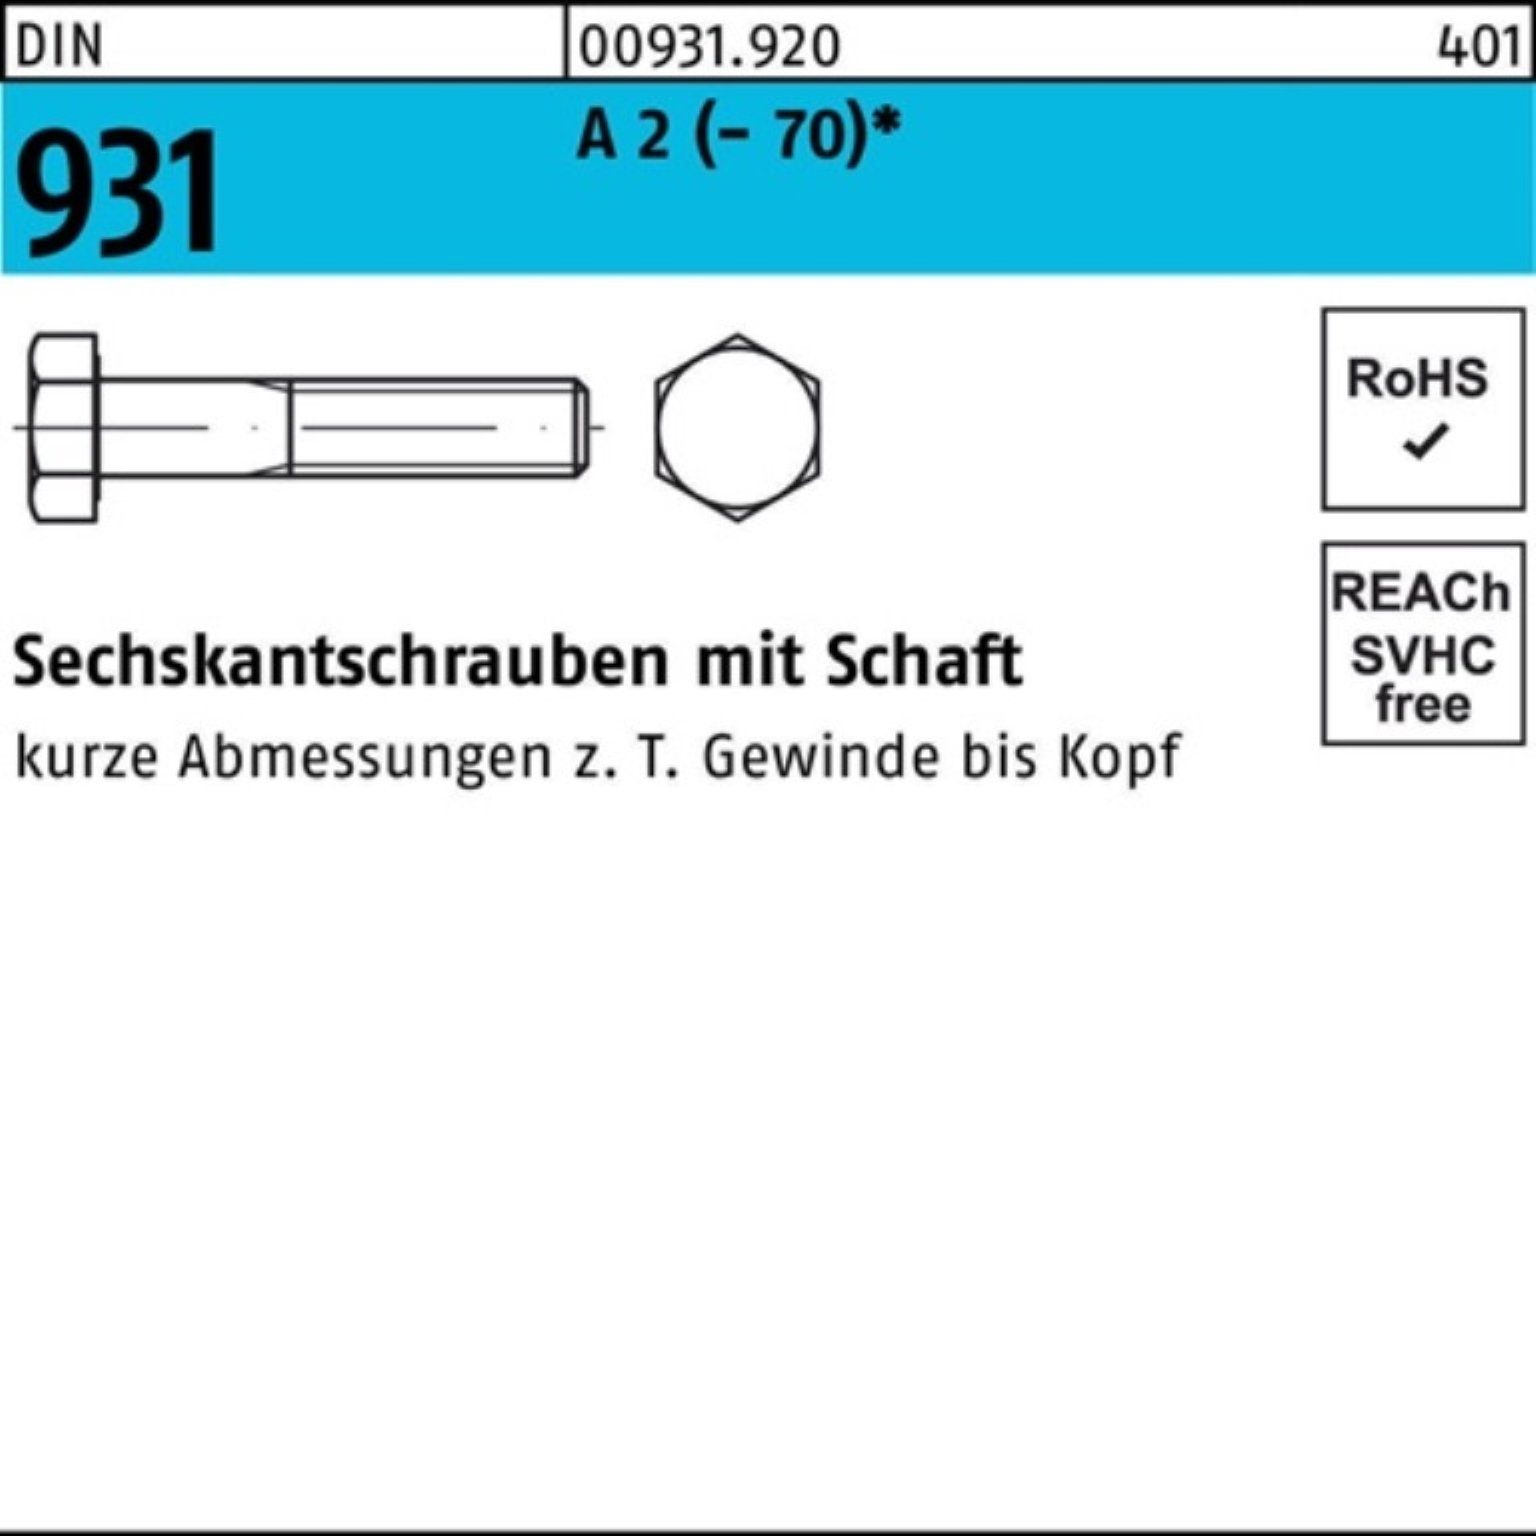 A (70) Sechskantschraube Pack 931 Reyher 2 Schaft 1 M24x 100er Stü Sechskantschraube DIN 120